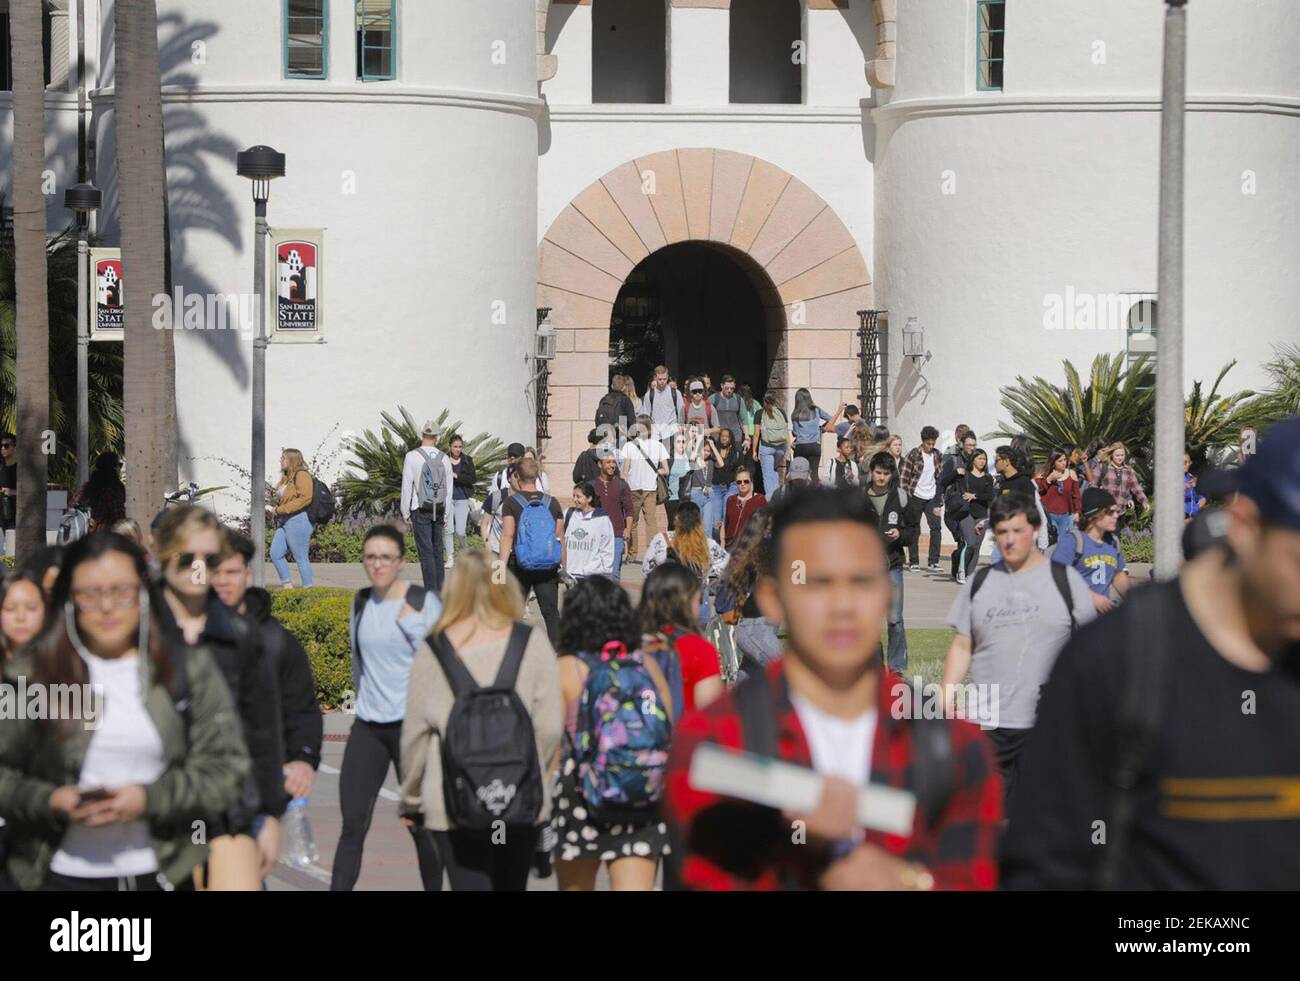 Gli studenti lasciano l'Hepner Hall e altri edifici nel campus della San Diego state University, che scorre sulla Campanile Walkway. (Foto di Howard Lipin/San Diego Union-Tribune/TNS/Sipa USA) Foto Stock